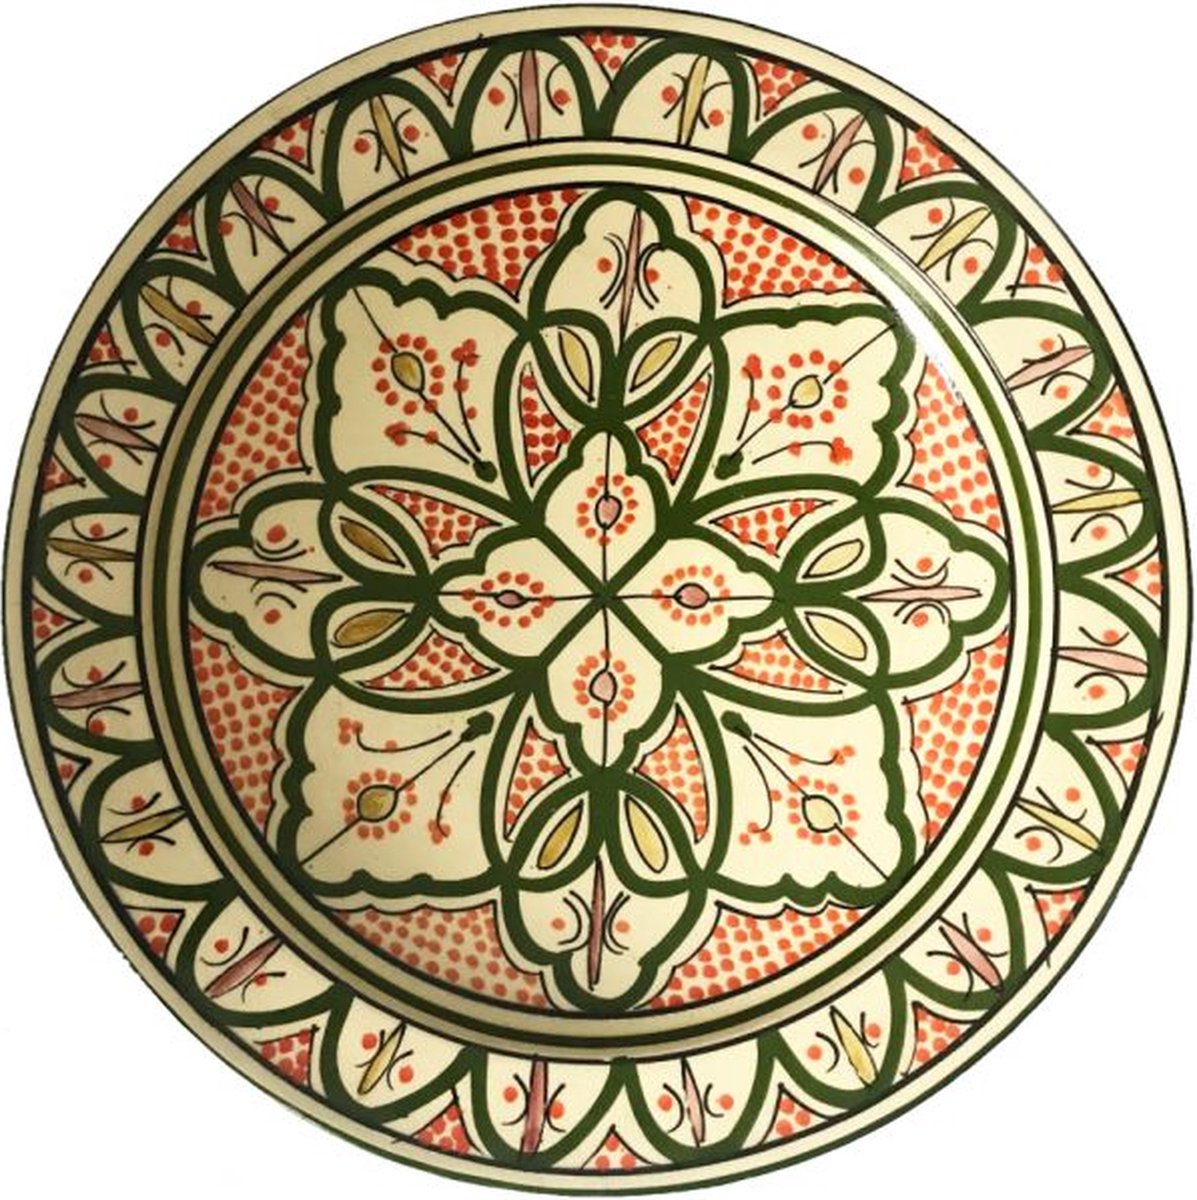 Handgemaakte Marokkaanse schaal 35 cm met bloemenpatronen